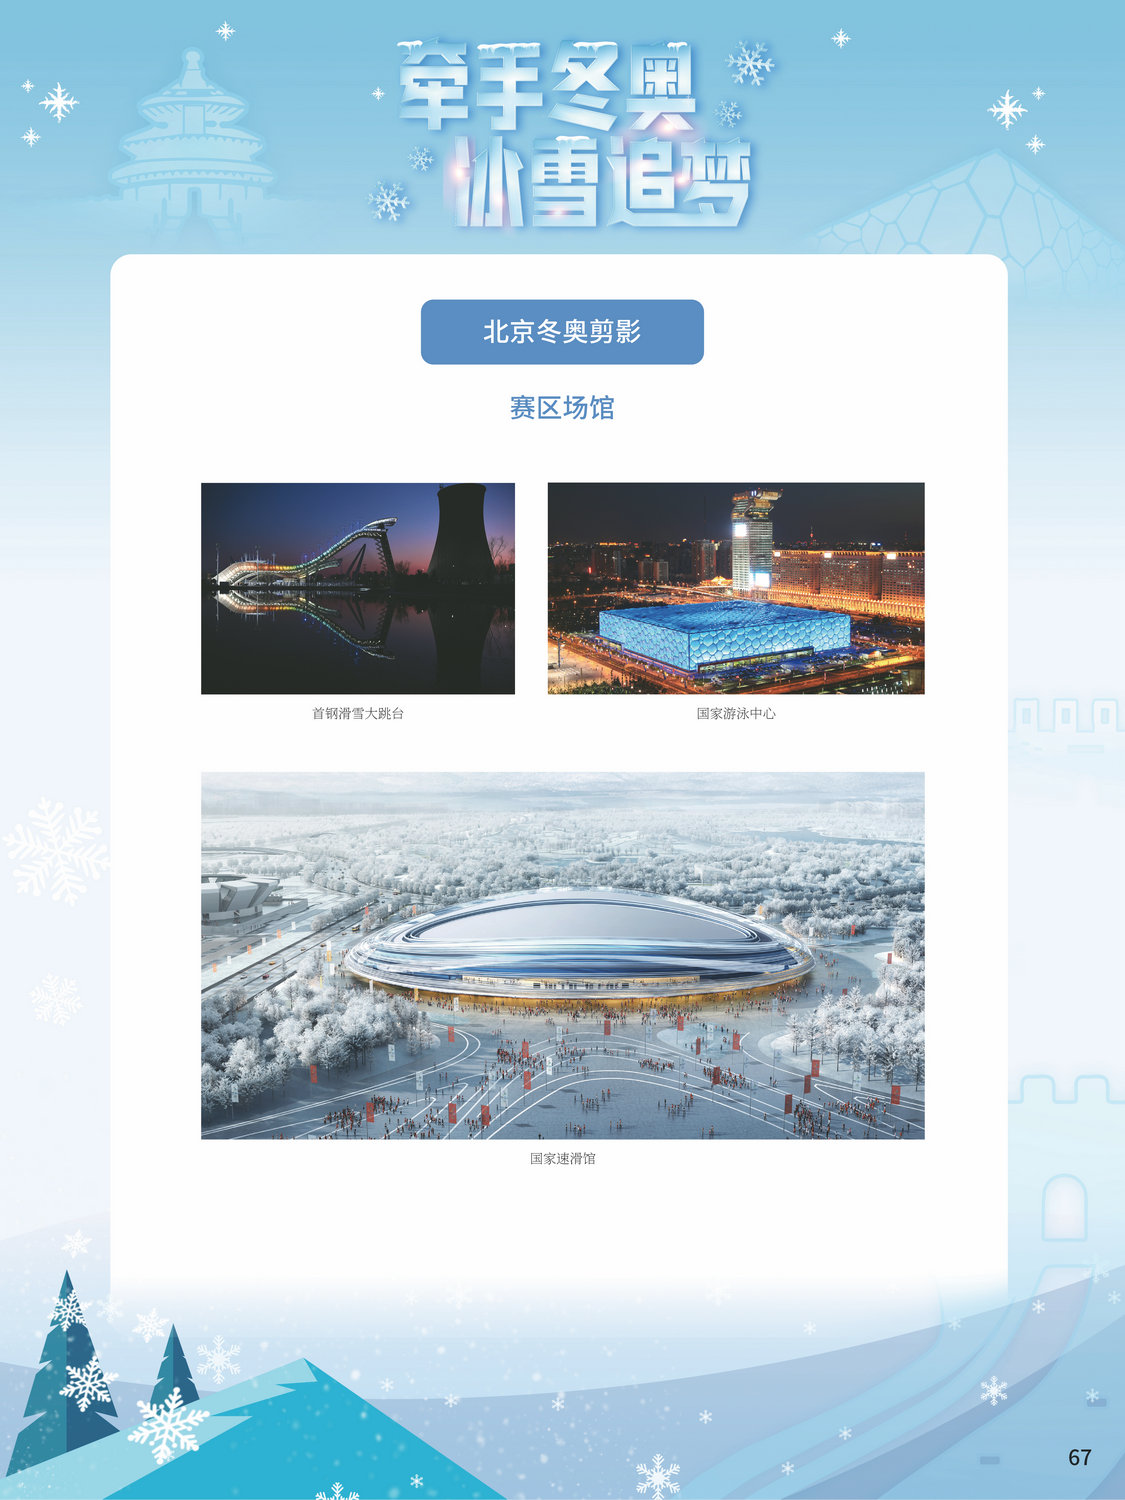 2022北京冬奥巡礼_图67